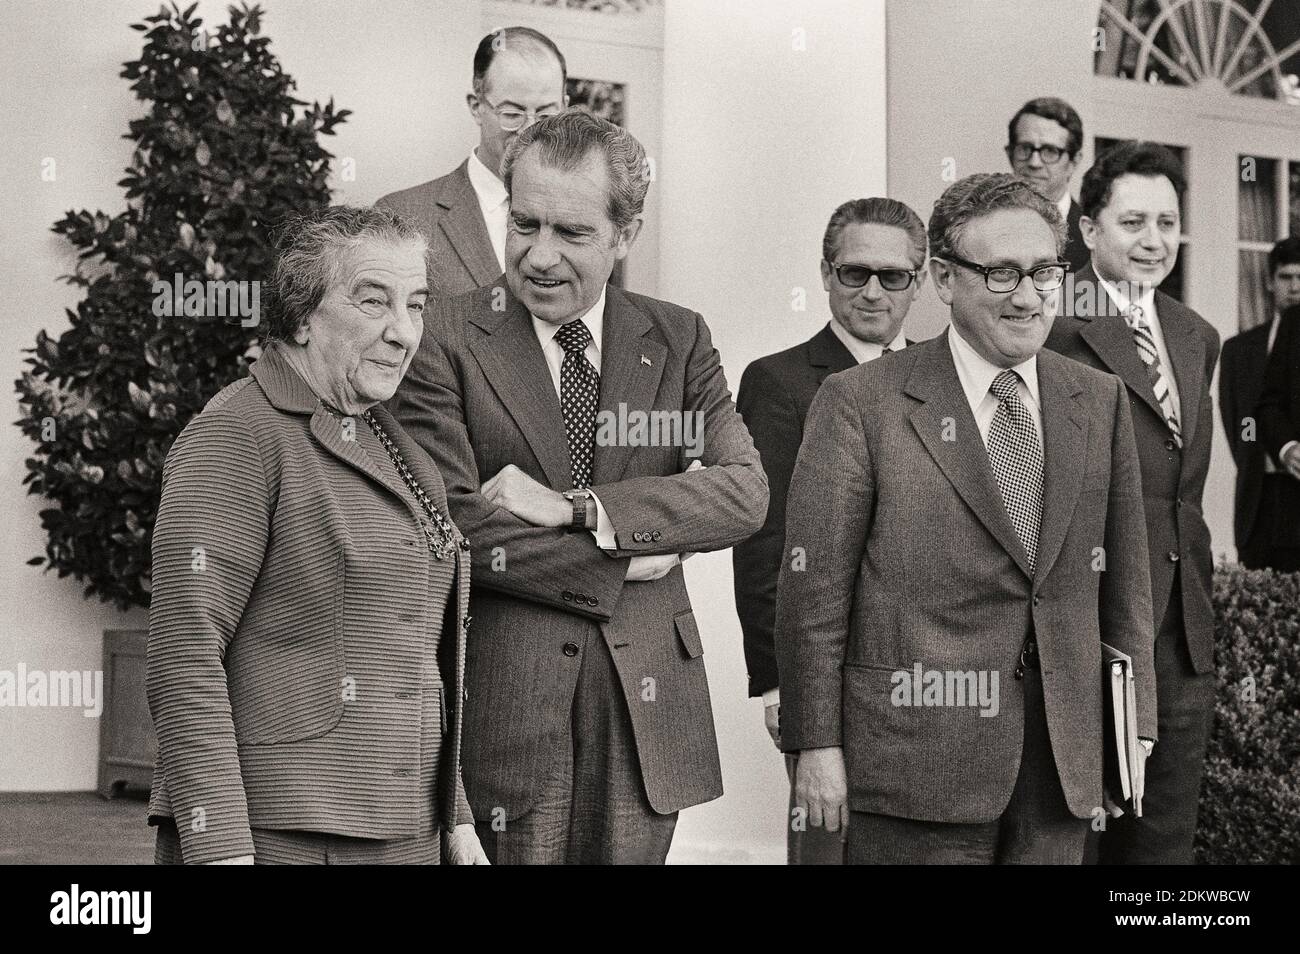 Le Premier ministre israélien Golda Meir, en présence du président Richard Nixon et de Henry Kissinger, devant la Maison Blanche. ÉTATS-UNIS. Novembre 1973 Banque D'Images